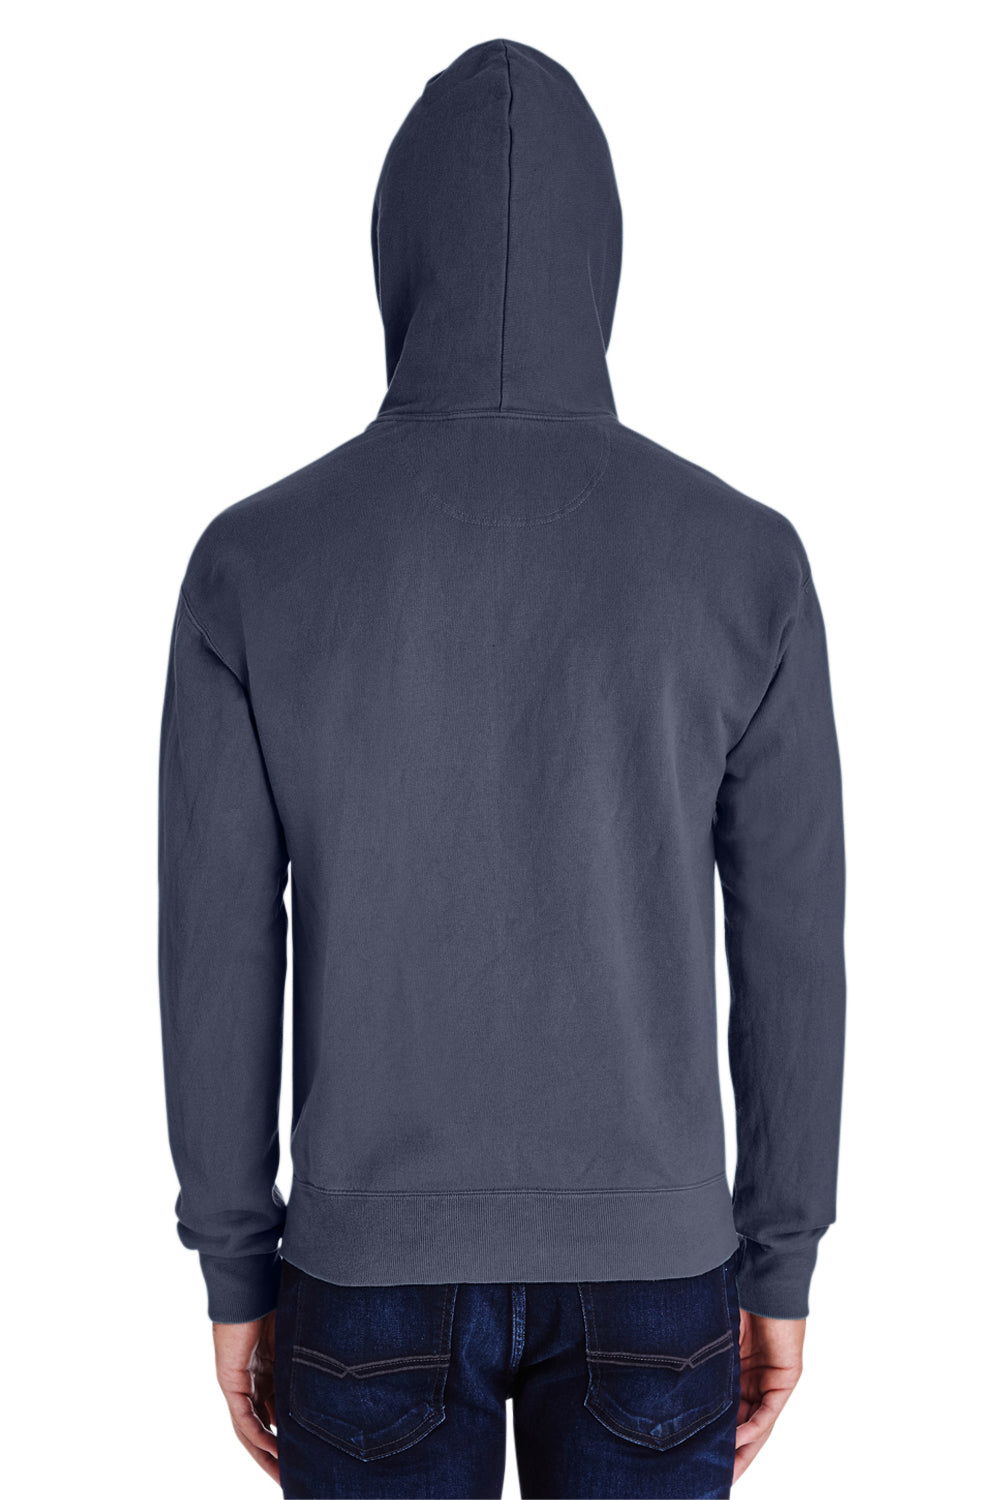 ComfortWash By Hanes GDH450 Mens Hooded Sweatshirt Hoodie Slate Blue Back